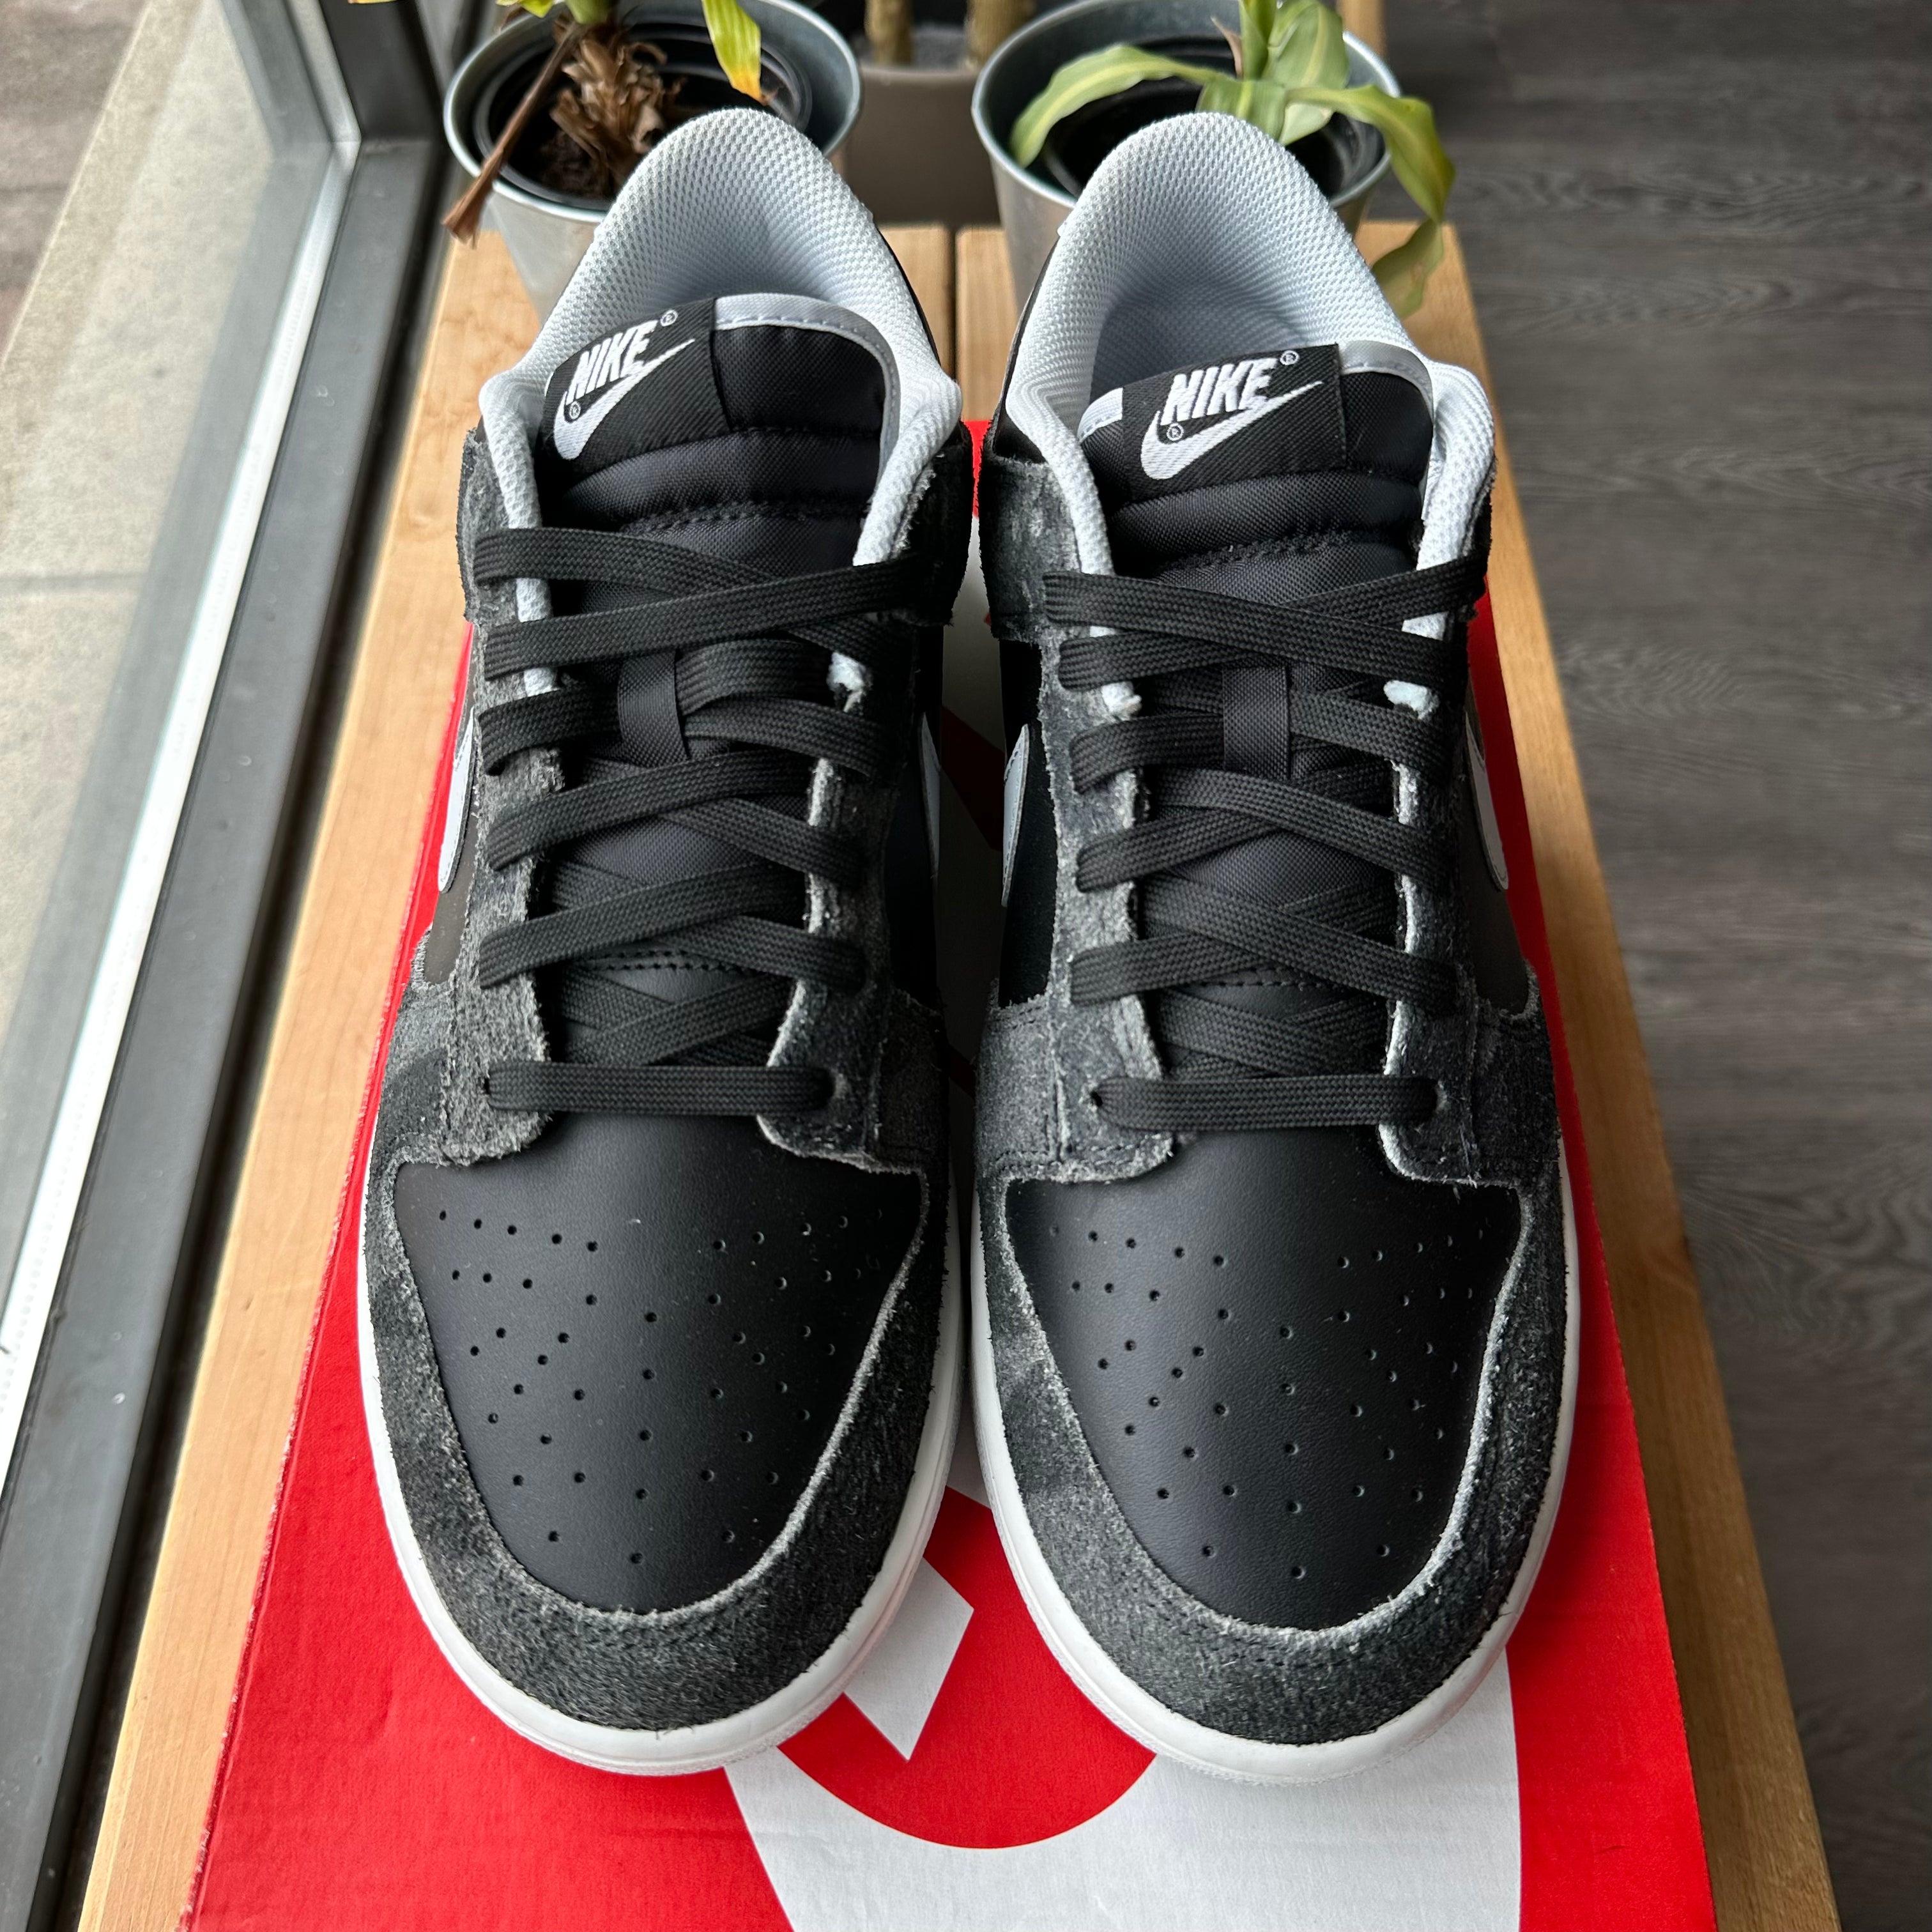 Brand New Nike Dunk Low "Zebra" Size 9.5